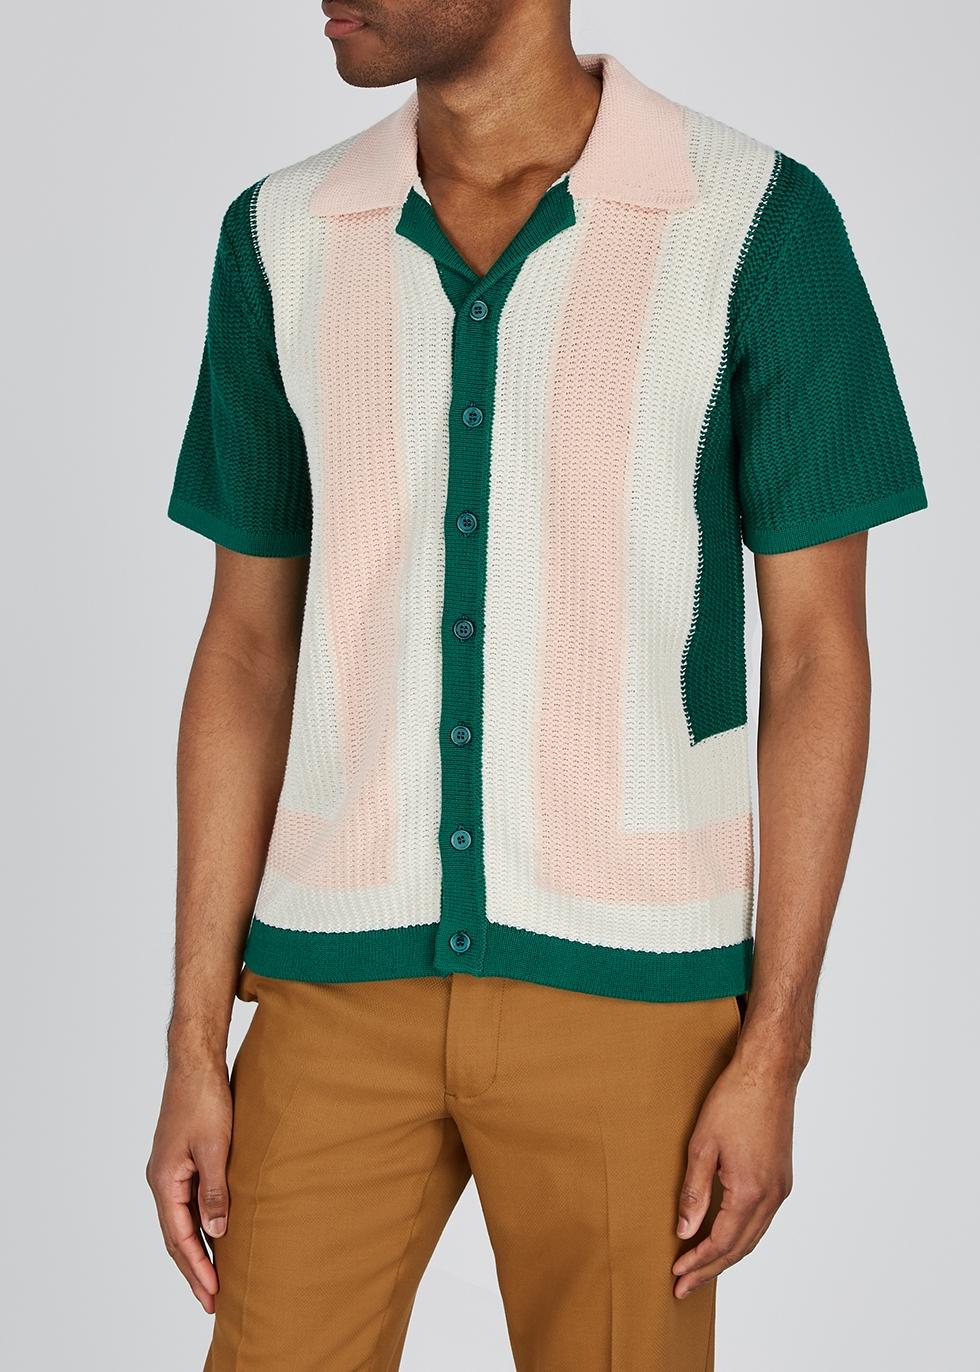 オンラインストア特売 Casablanca BRAID STRIPED SHIRT ニットシャツ 